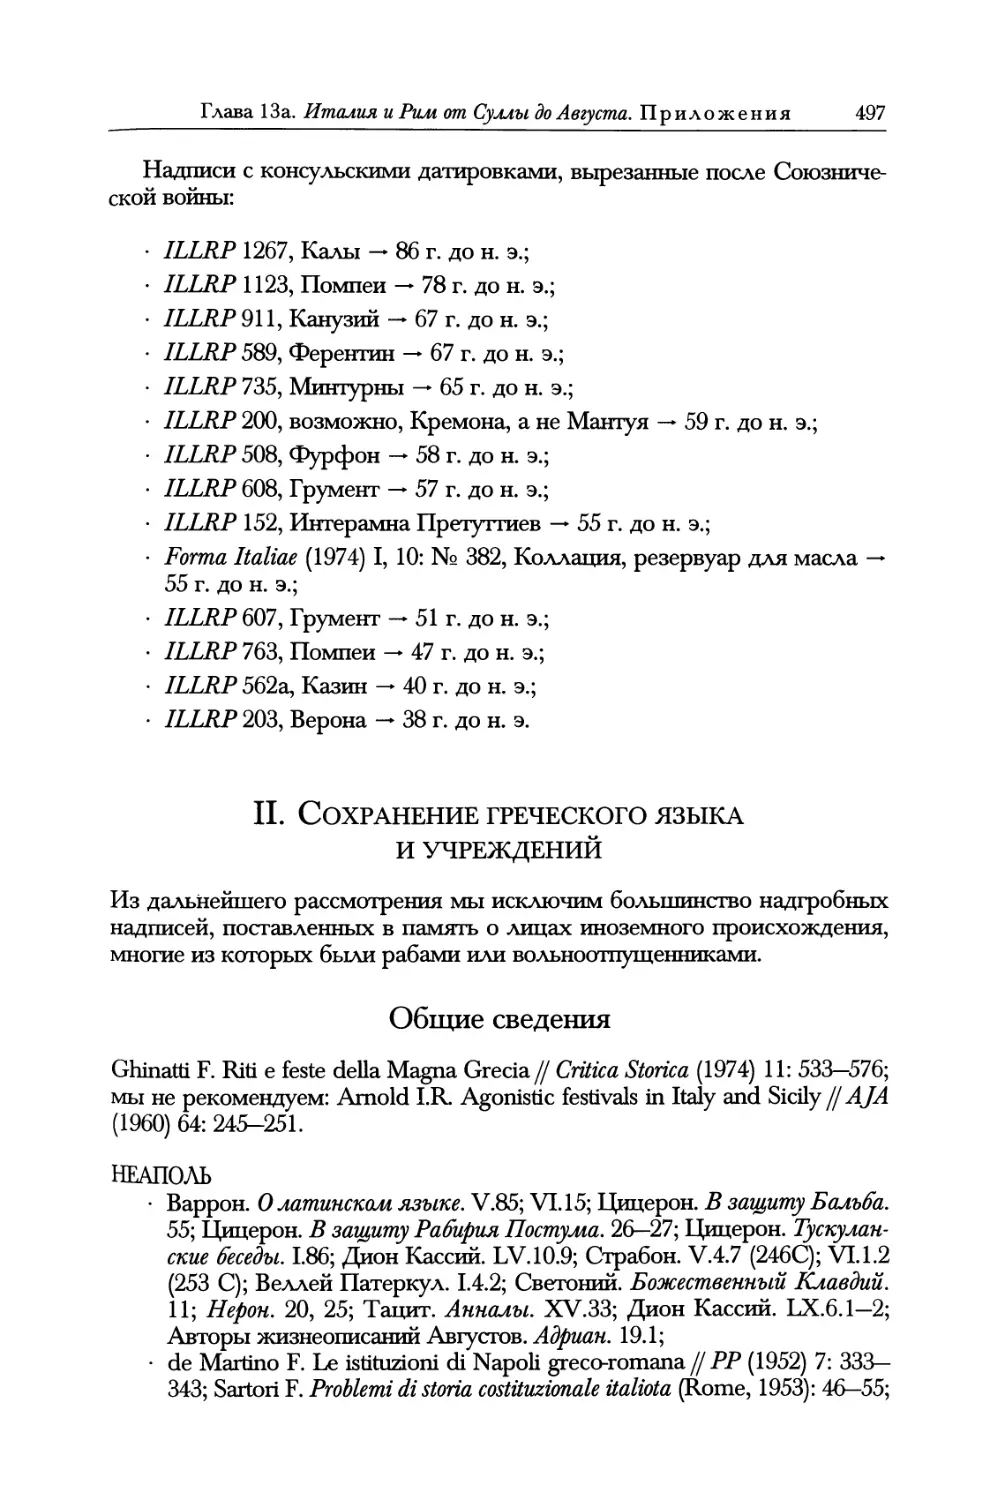 II. Сохранение греческого языка и учреждений